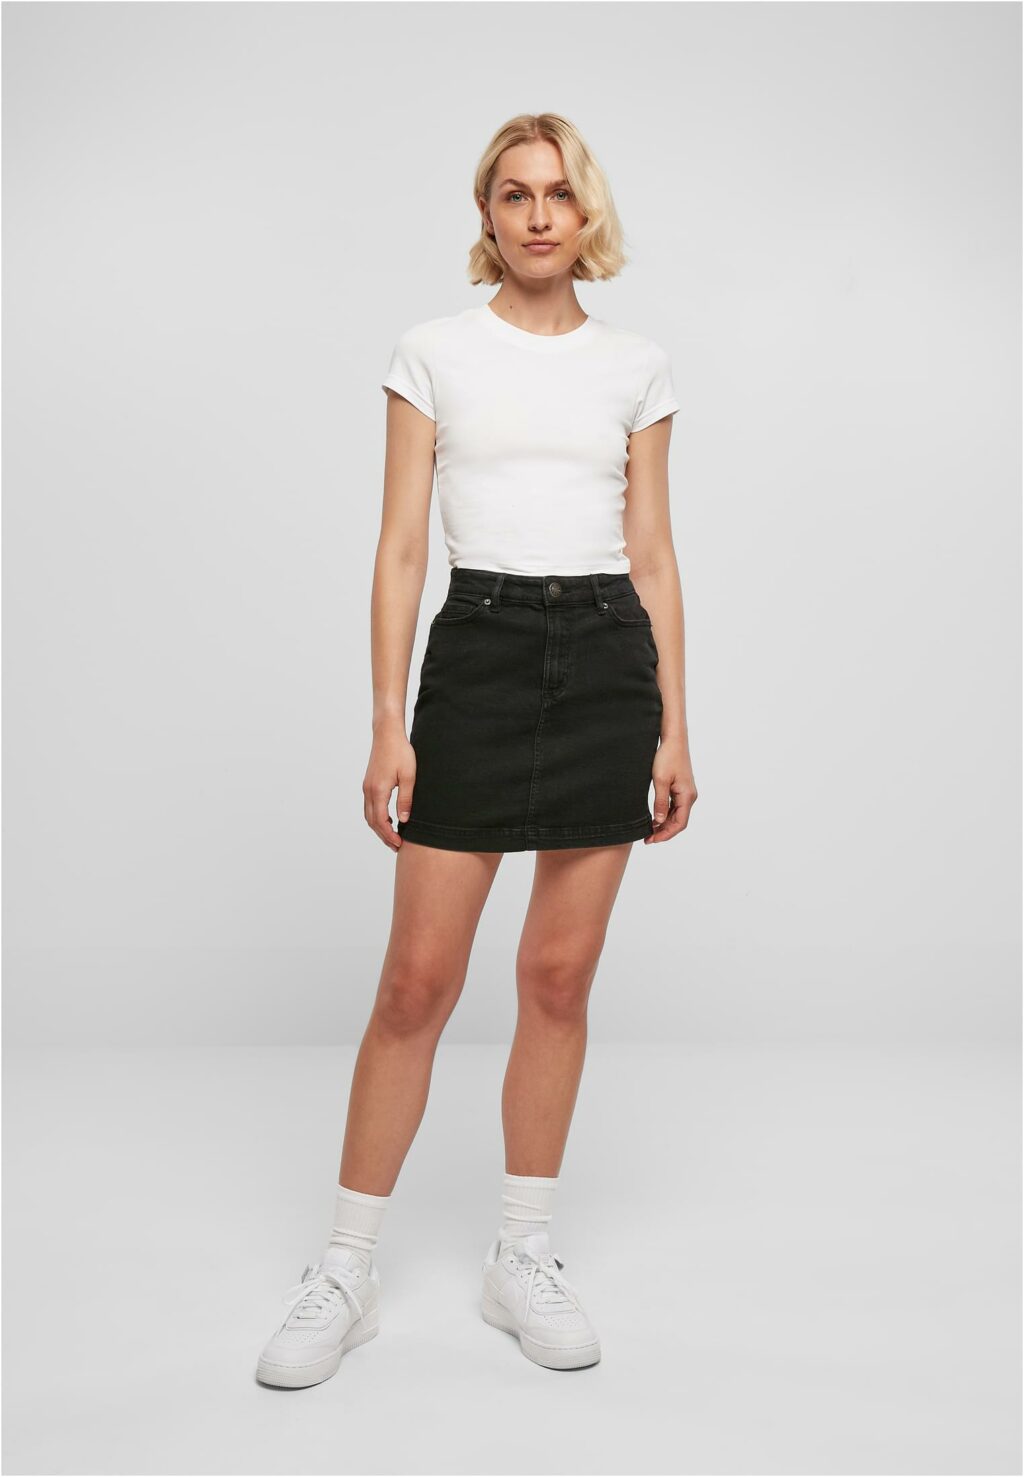 Urban Classics Ladies Organic Stretch Denim Mini Skirt black washed TB4799